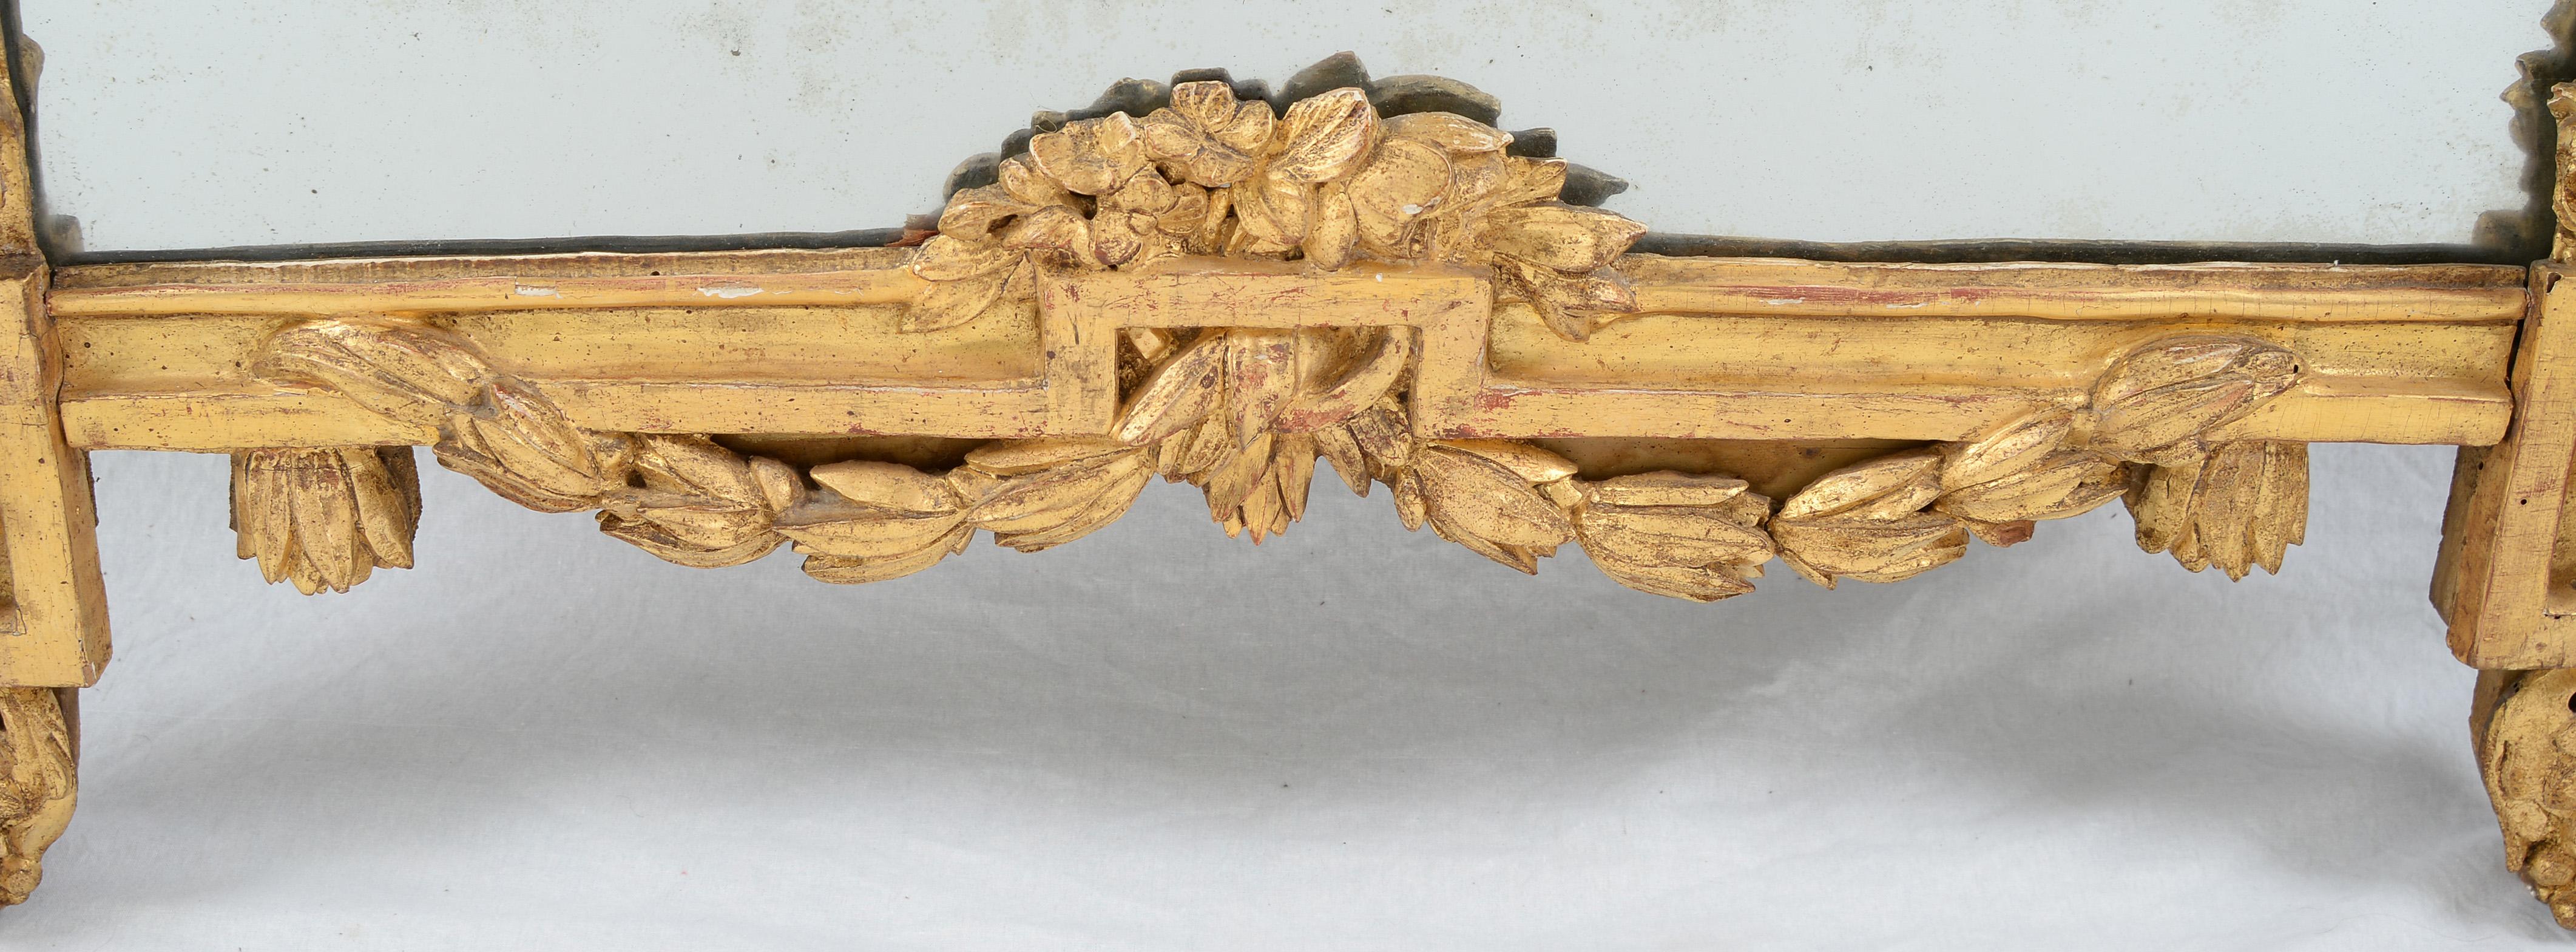 Miroir en bois doré de style Louis XVI dans le goût grec, de forme rectangulaire surmonté d'une urne en cercle et suspendu par une guirlande de feuillage en ruban, enveloppant partiellement chaque côté derrière les coins supérieurs.  

Avec sa crête